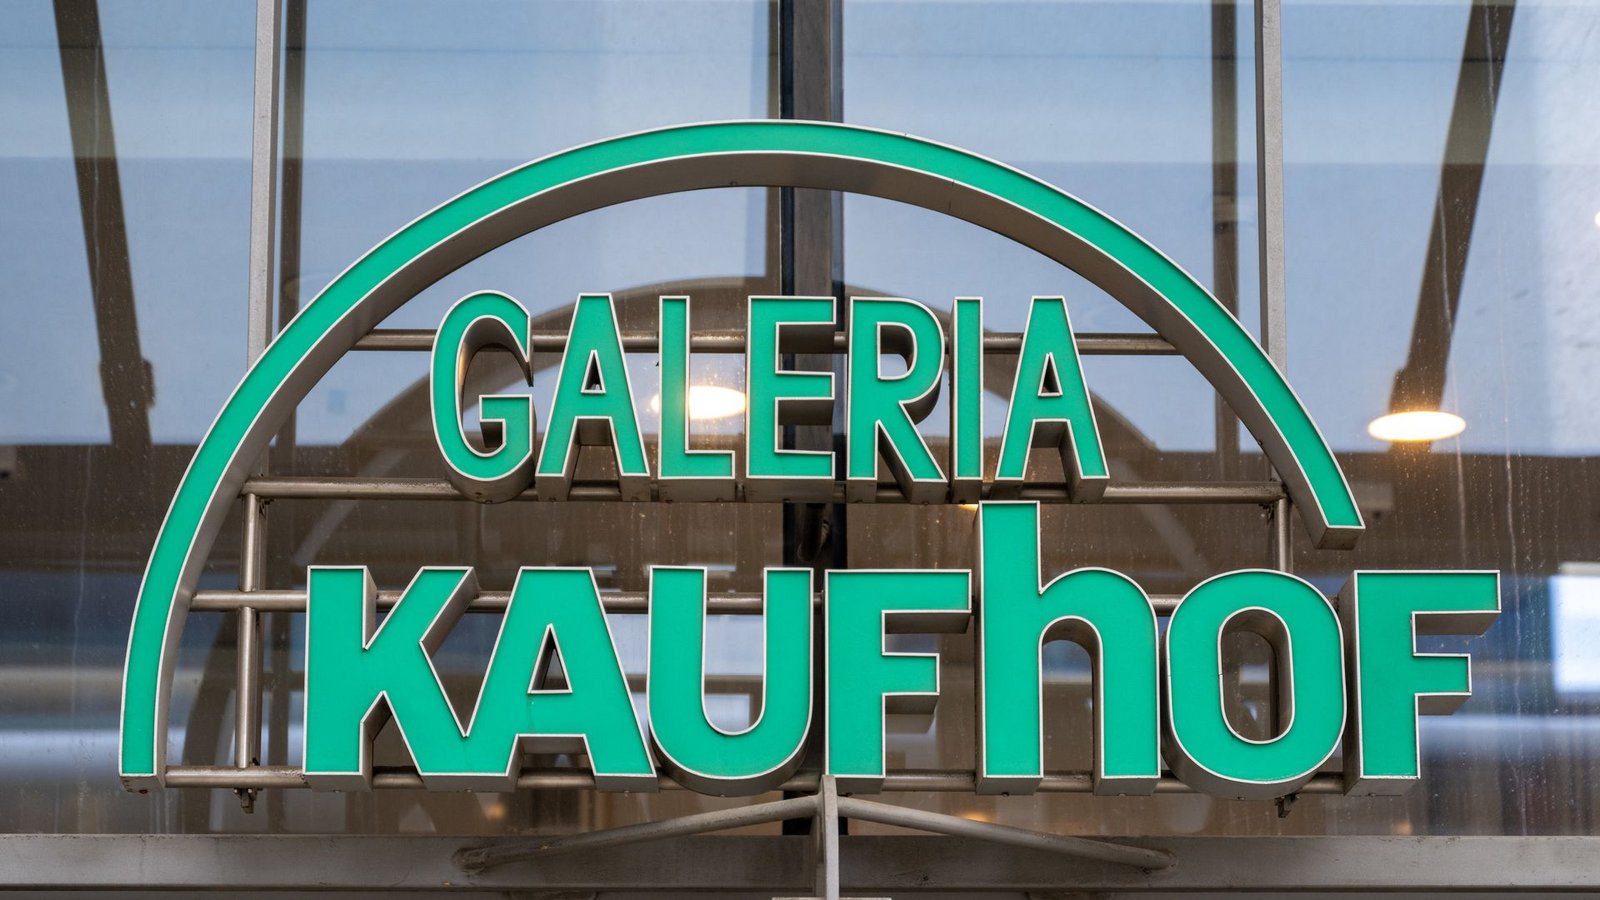 Insolvenzverwalter Stefan Denkhaus ist überzeugt von den wirtschaftlichen Aussichten von Galeria Kaufhof. (Symbolbild)Foto: dpa/Hendrik Schmidt